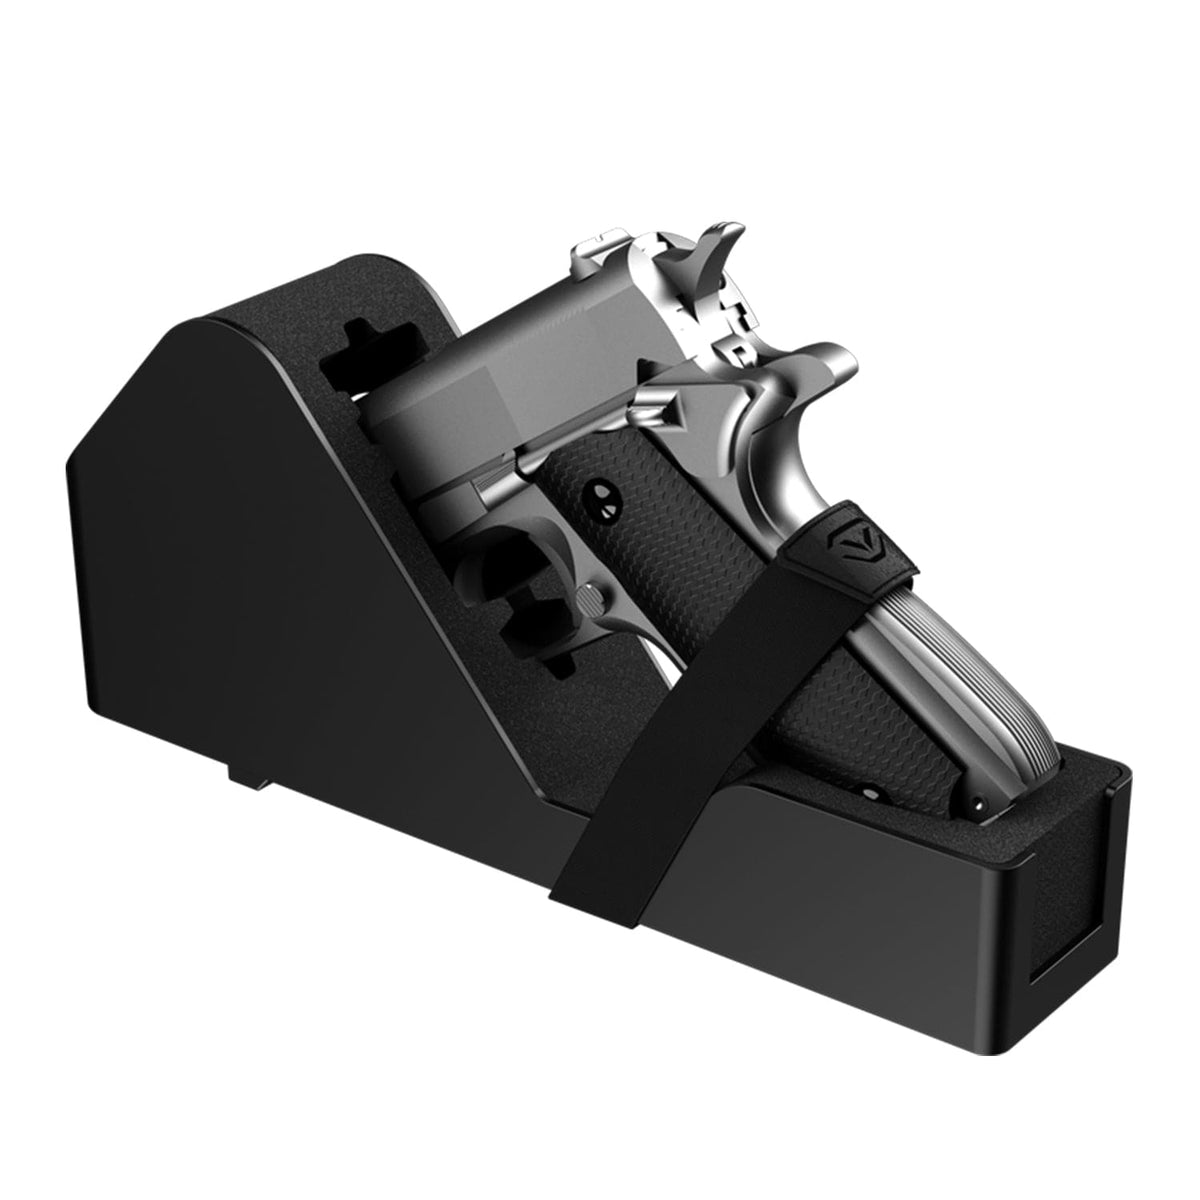 Vaultek XT-PR1 LifePod XT Pistol Rack with Velcro Armadillo Safe and Vault